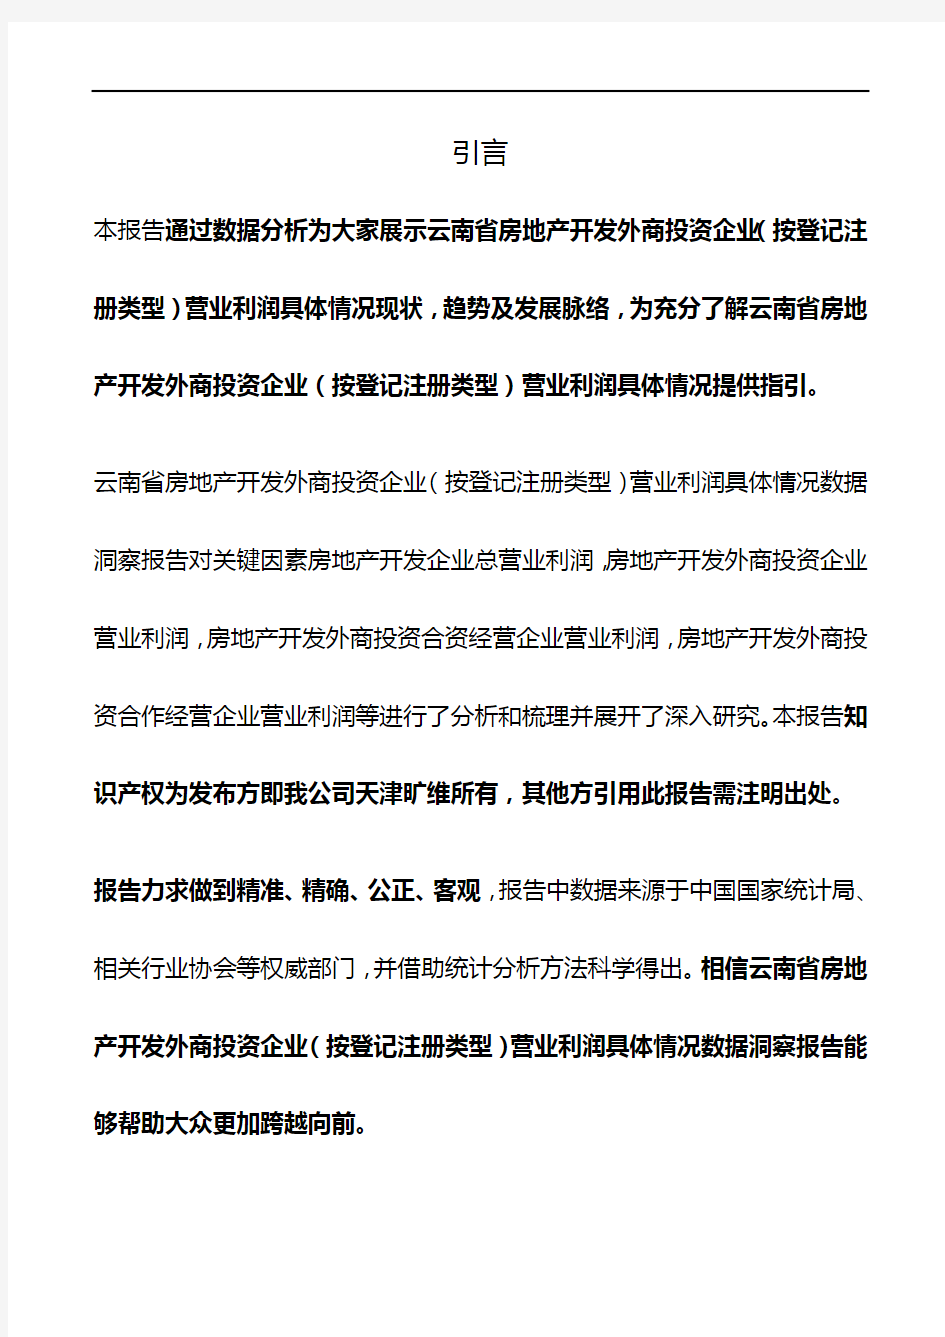 云南省房地产开发外商投资企业(按登记注册类型)营业利润具体情况3年数据洞察报告2019版